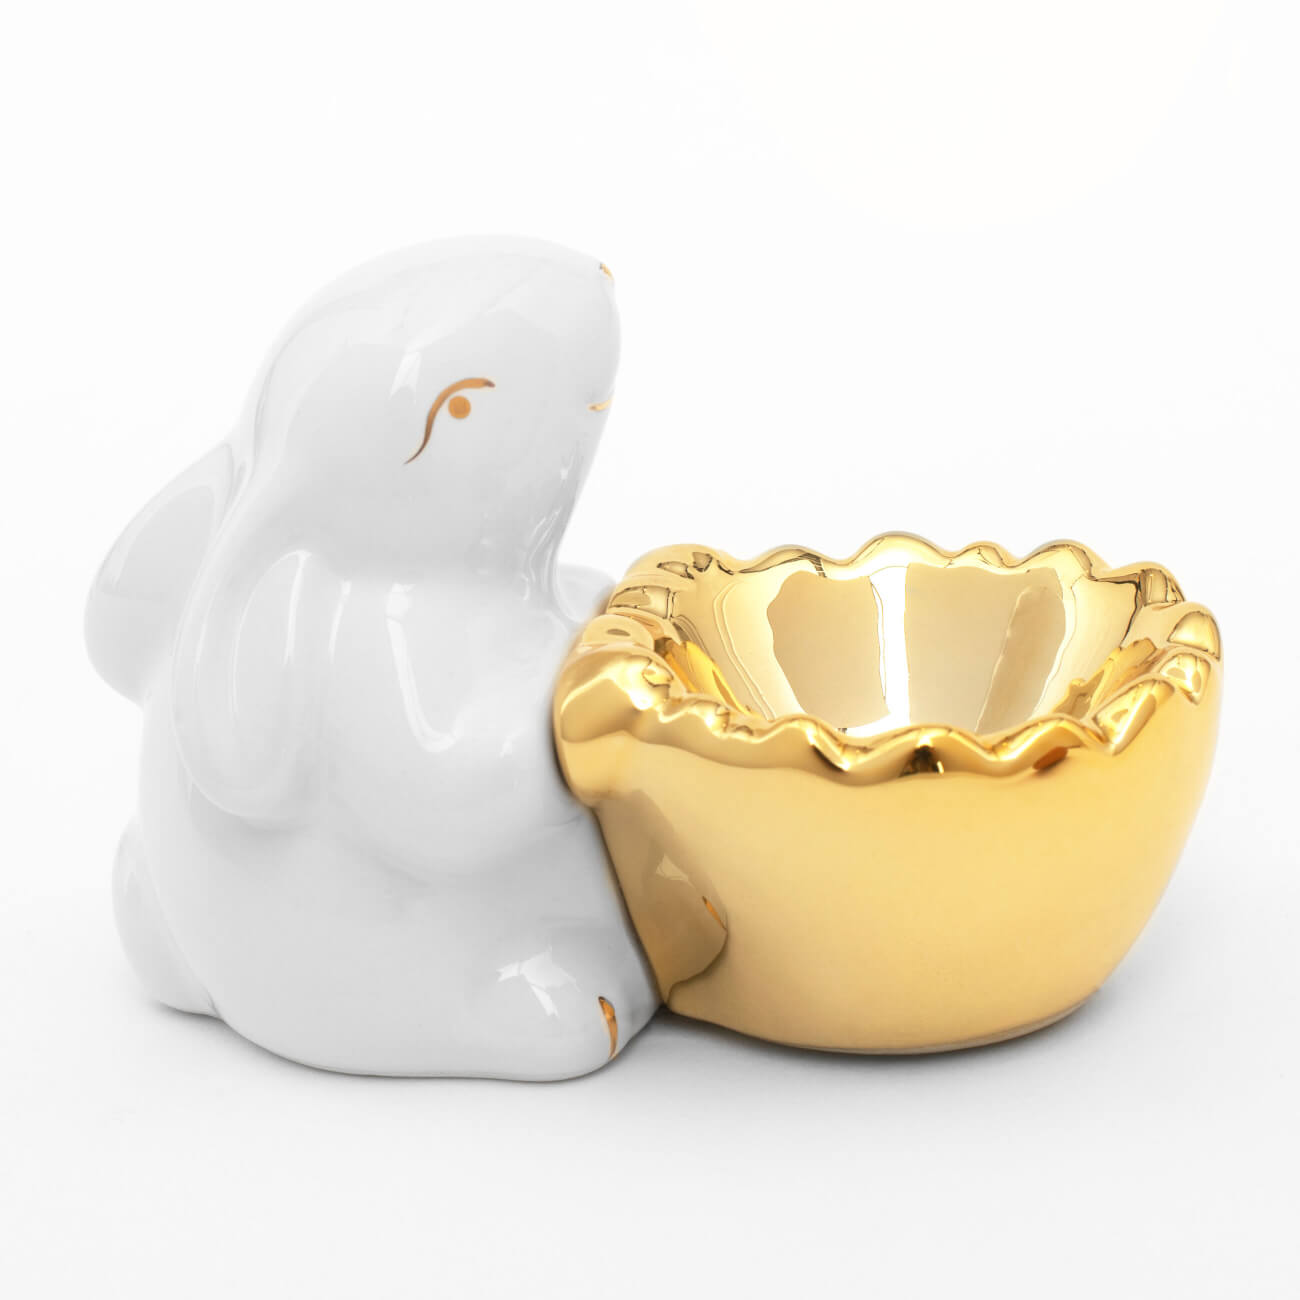 Подставка для яйца, 11 см, керамика, бело-золотистая, Кролик со скорлупой, Easter gold архитектурная керамика мира т5